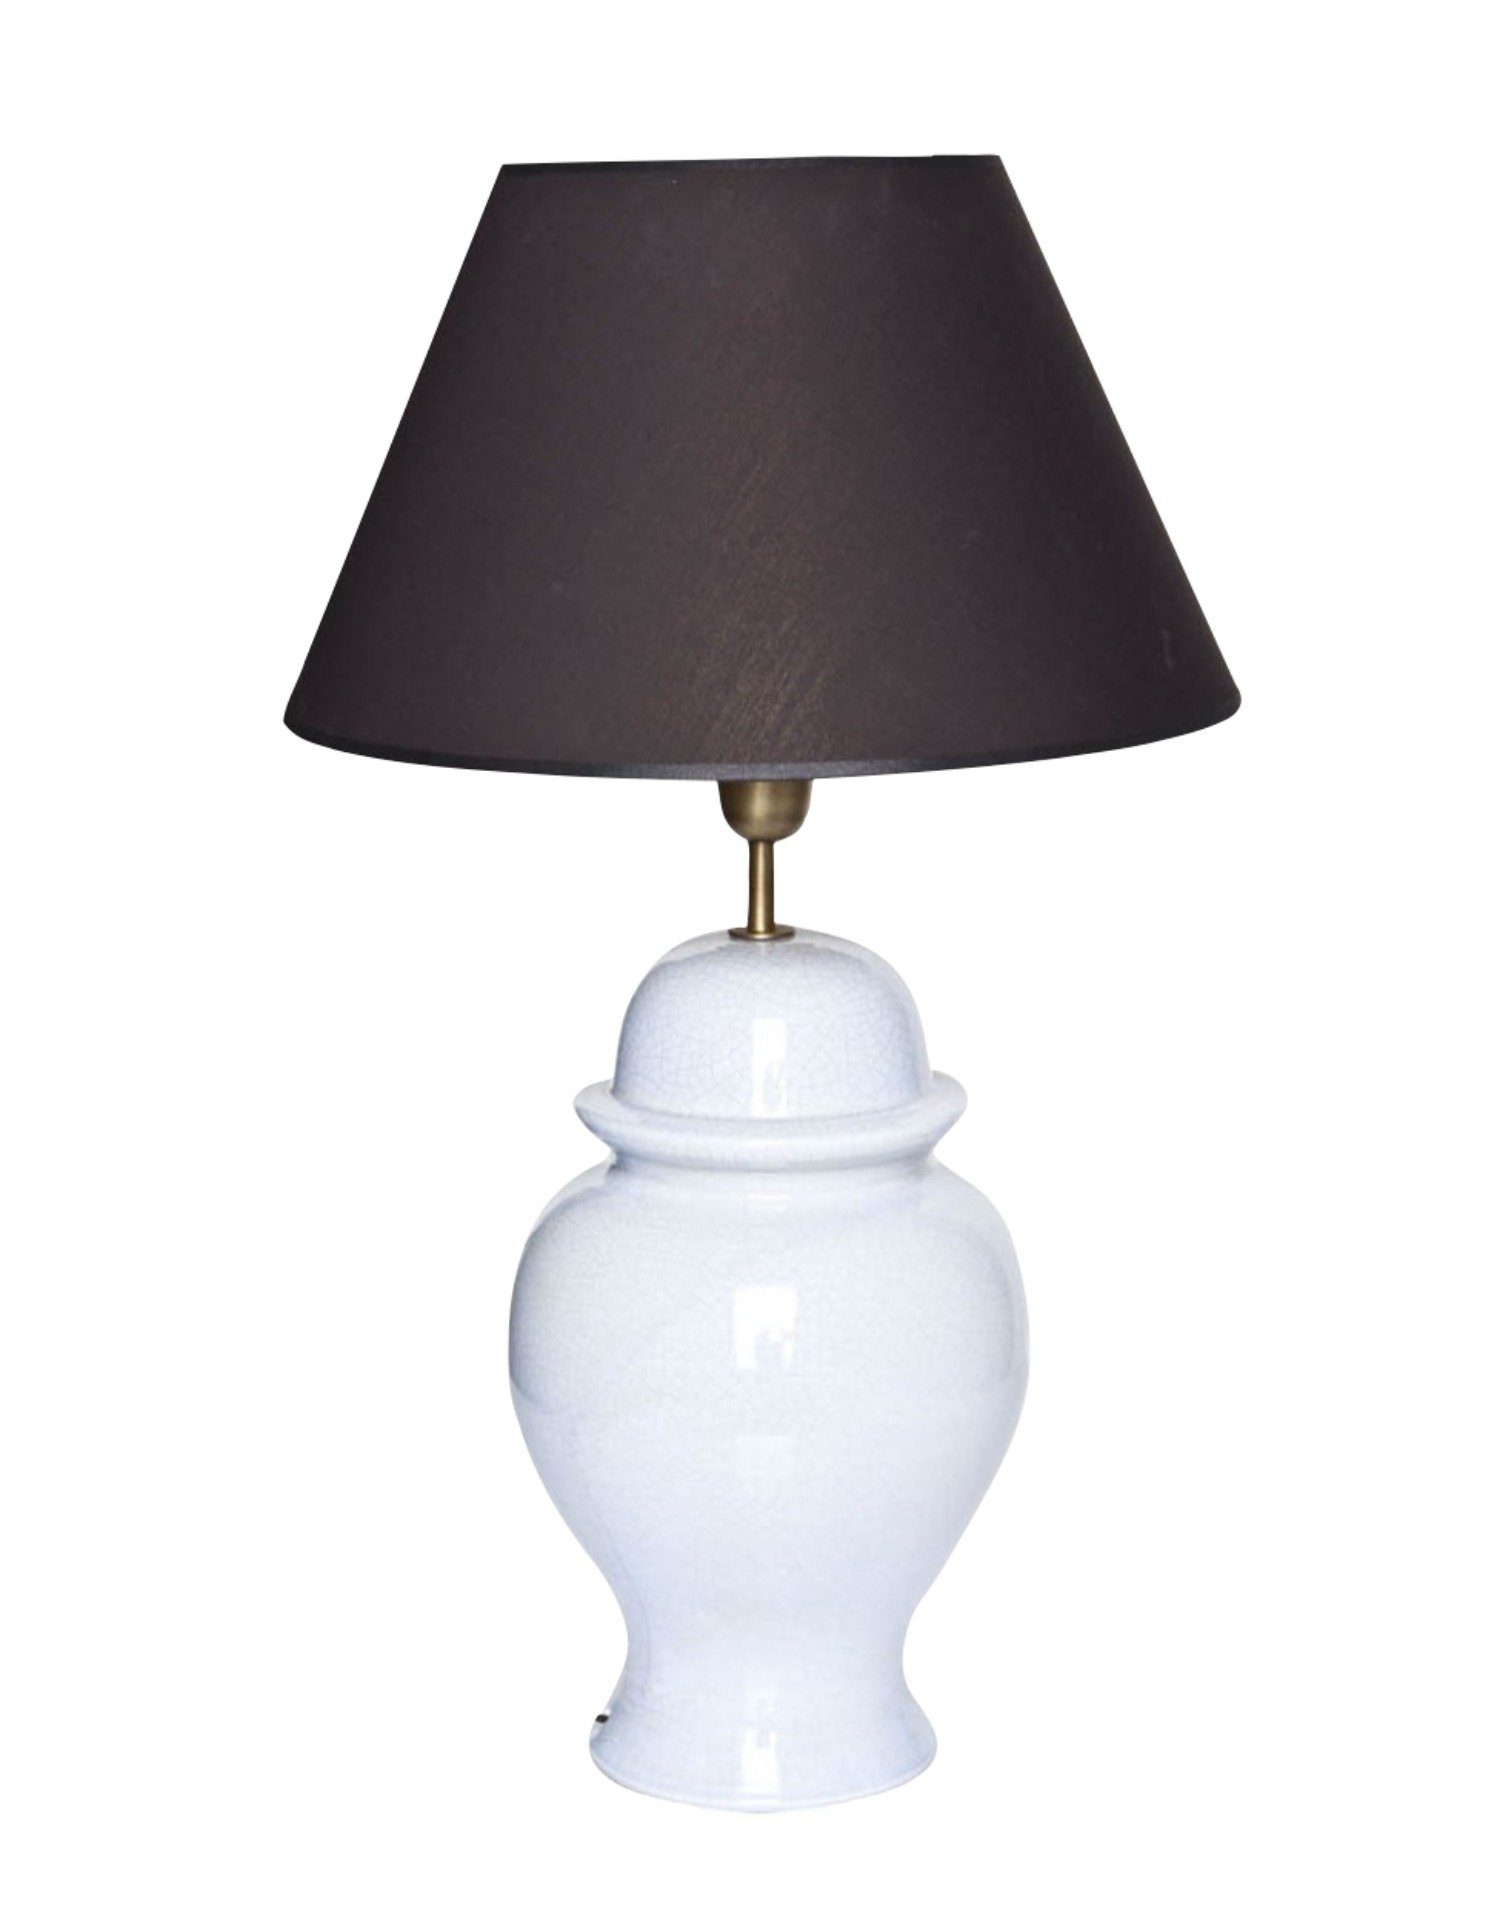 Signature Home Collection Schreibtischlampe, ohne mit Leuchtmittel, Keramik warmweiß, Tischlampe hellblau Lampenschirm